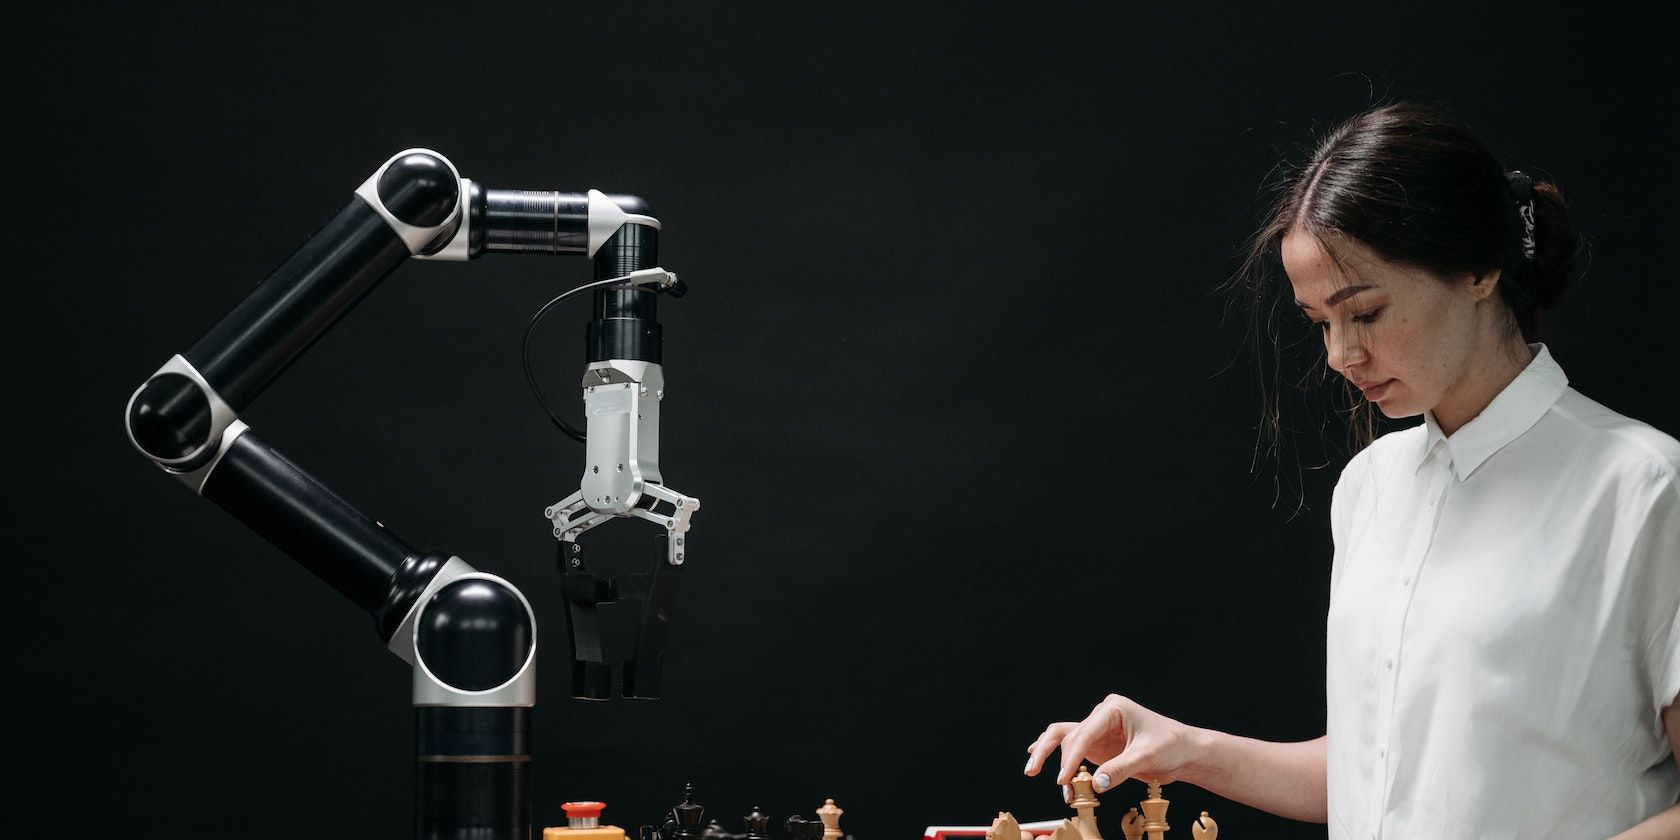 Femme en chemise blanche jouant aux échecs contre un robot